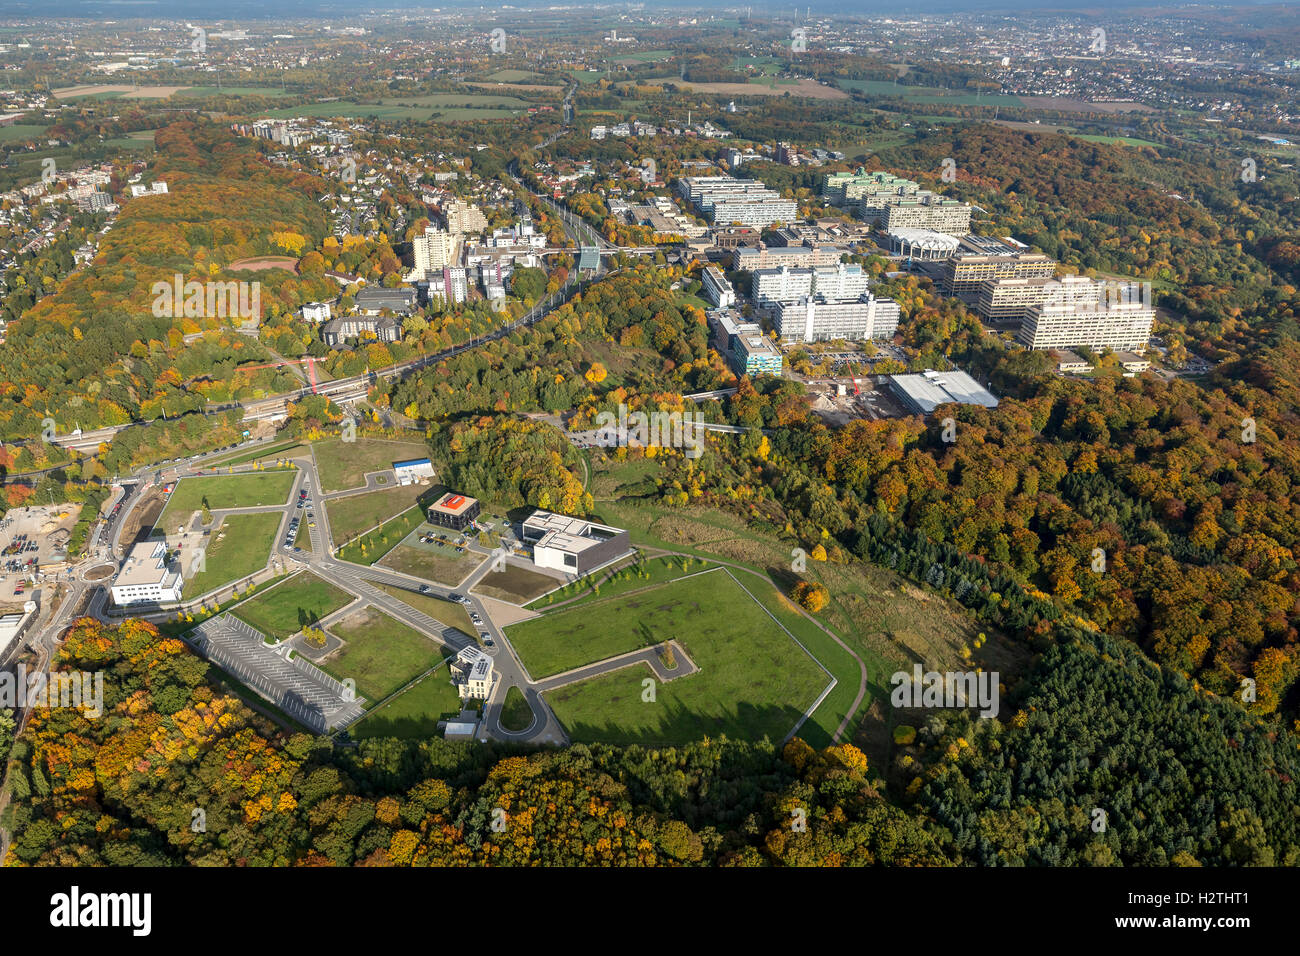 Fotografia aerea, biologia medicina salute park campus, fotografia aerea di Bochum, Bochum, la zona della Ruhr, Renania settentrionale-Vestfalia,Germania Foto Stock